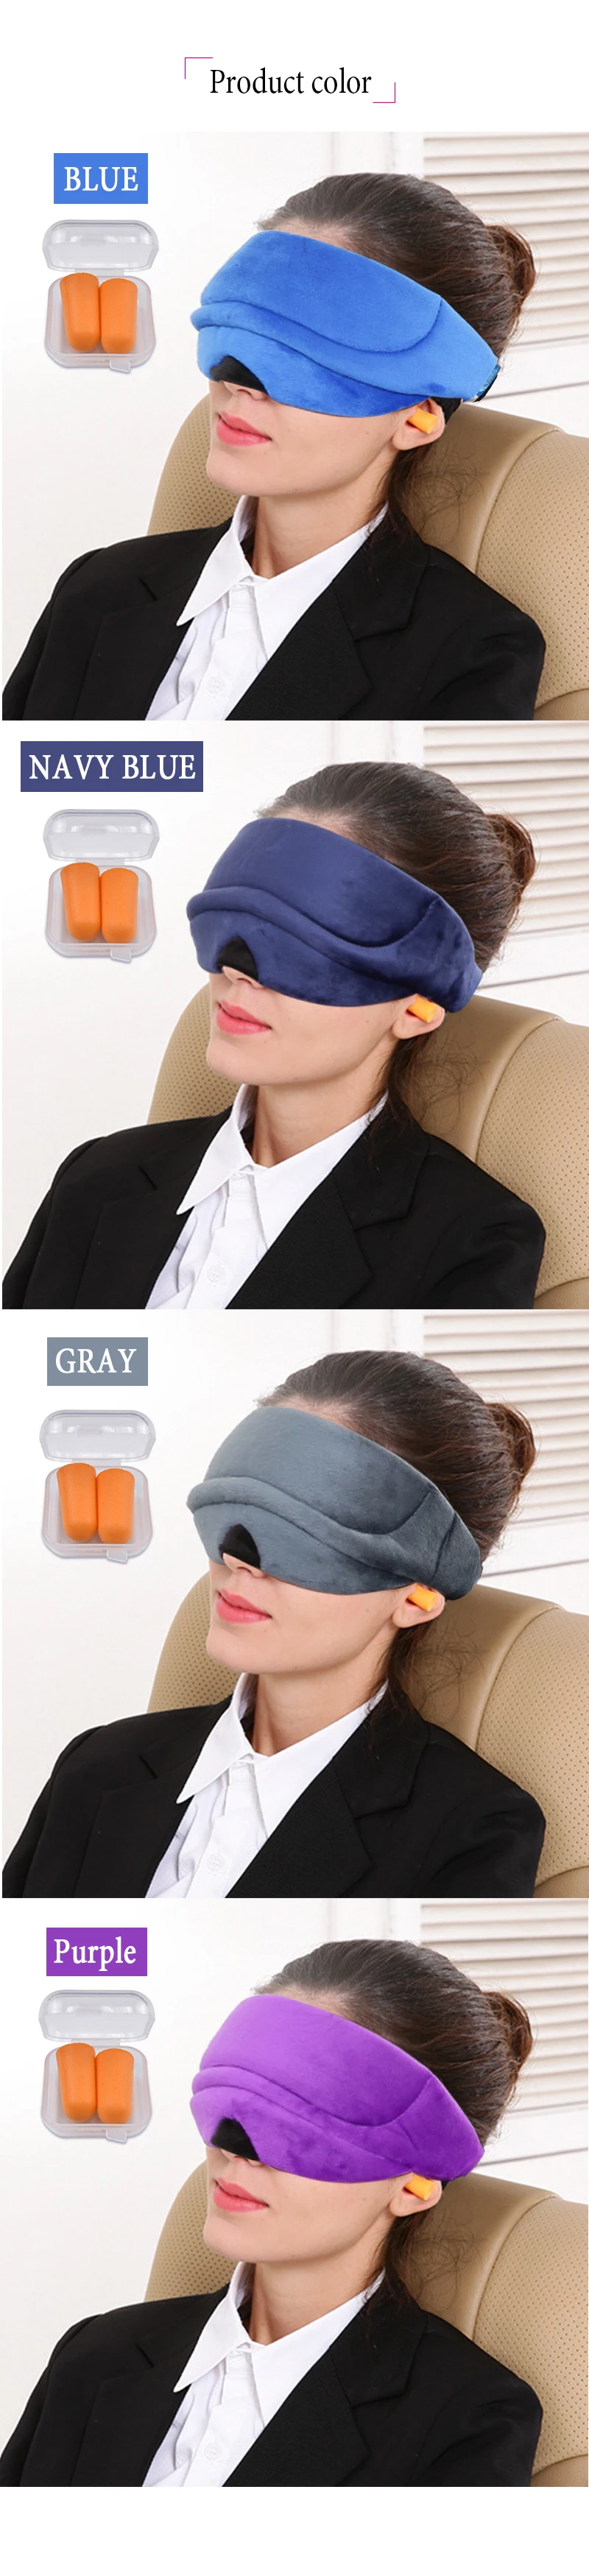 4 цвета 3D сна маска для глаз для офиса открытый путешествия расслабиться помощь спящие тени мягкие дышащие глаз патч повязку регулируемый